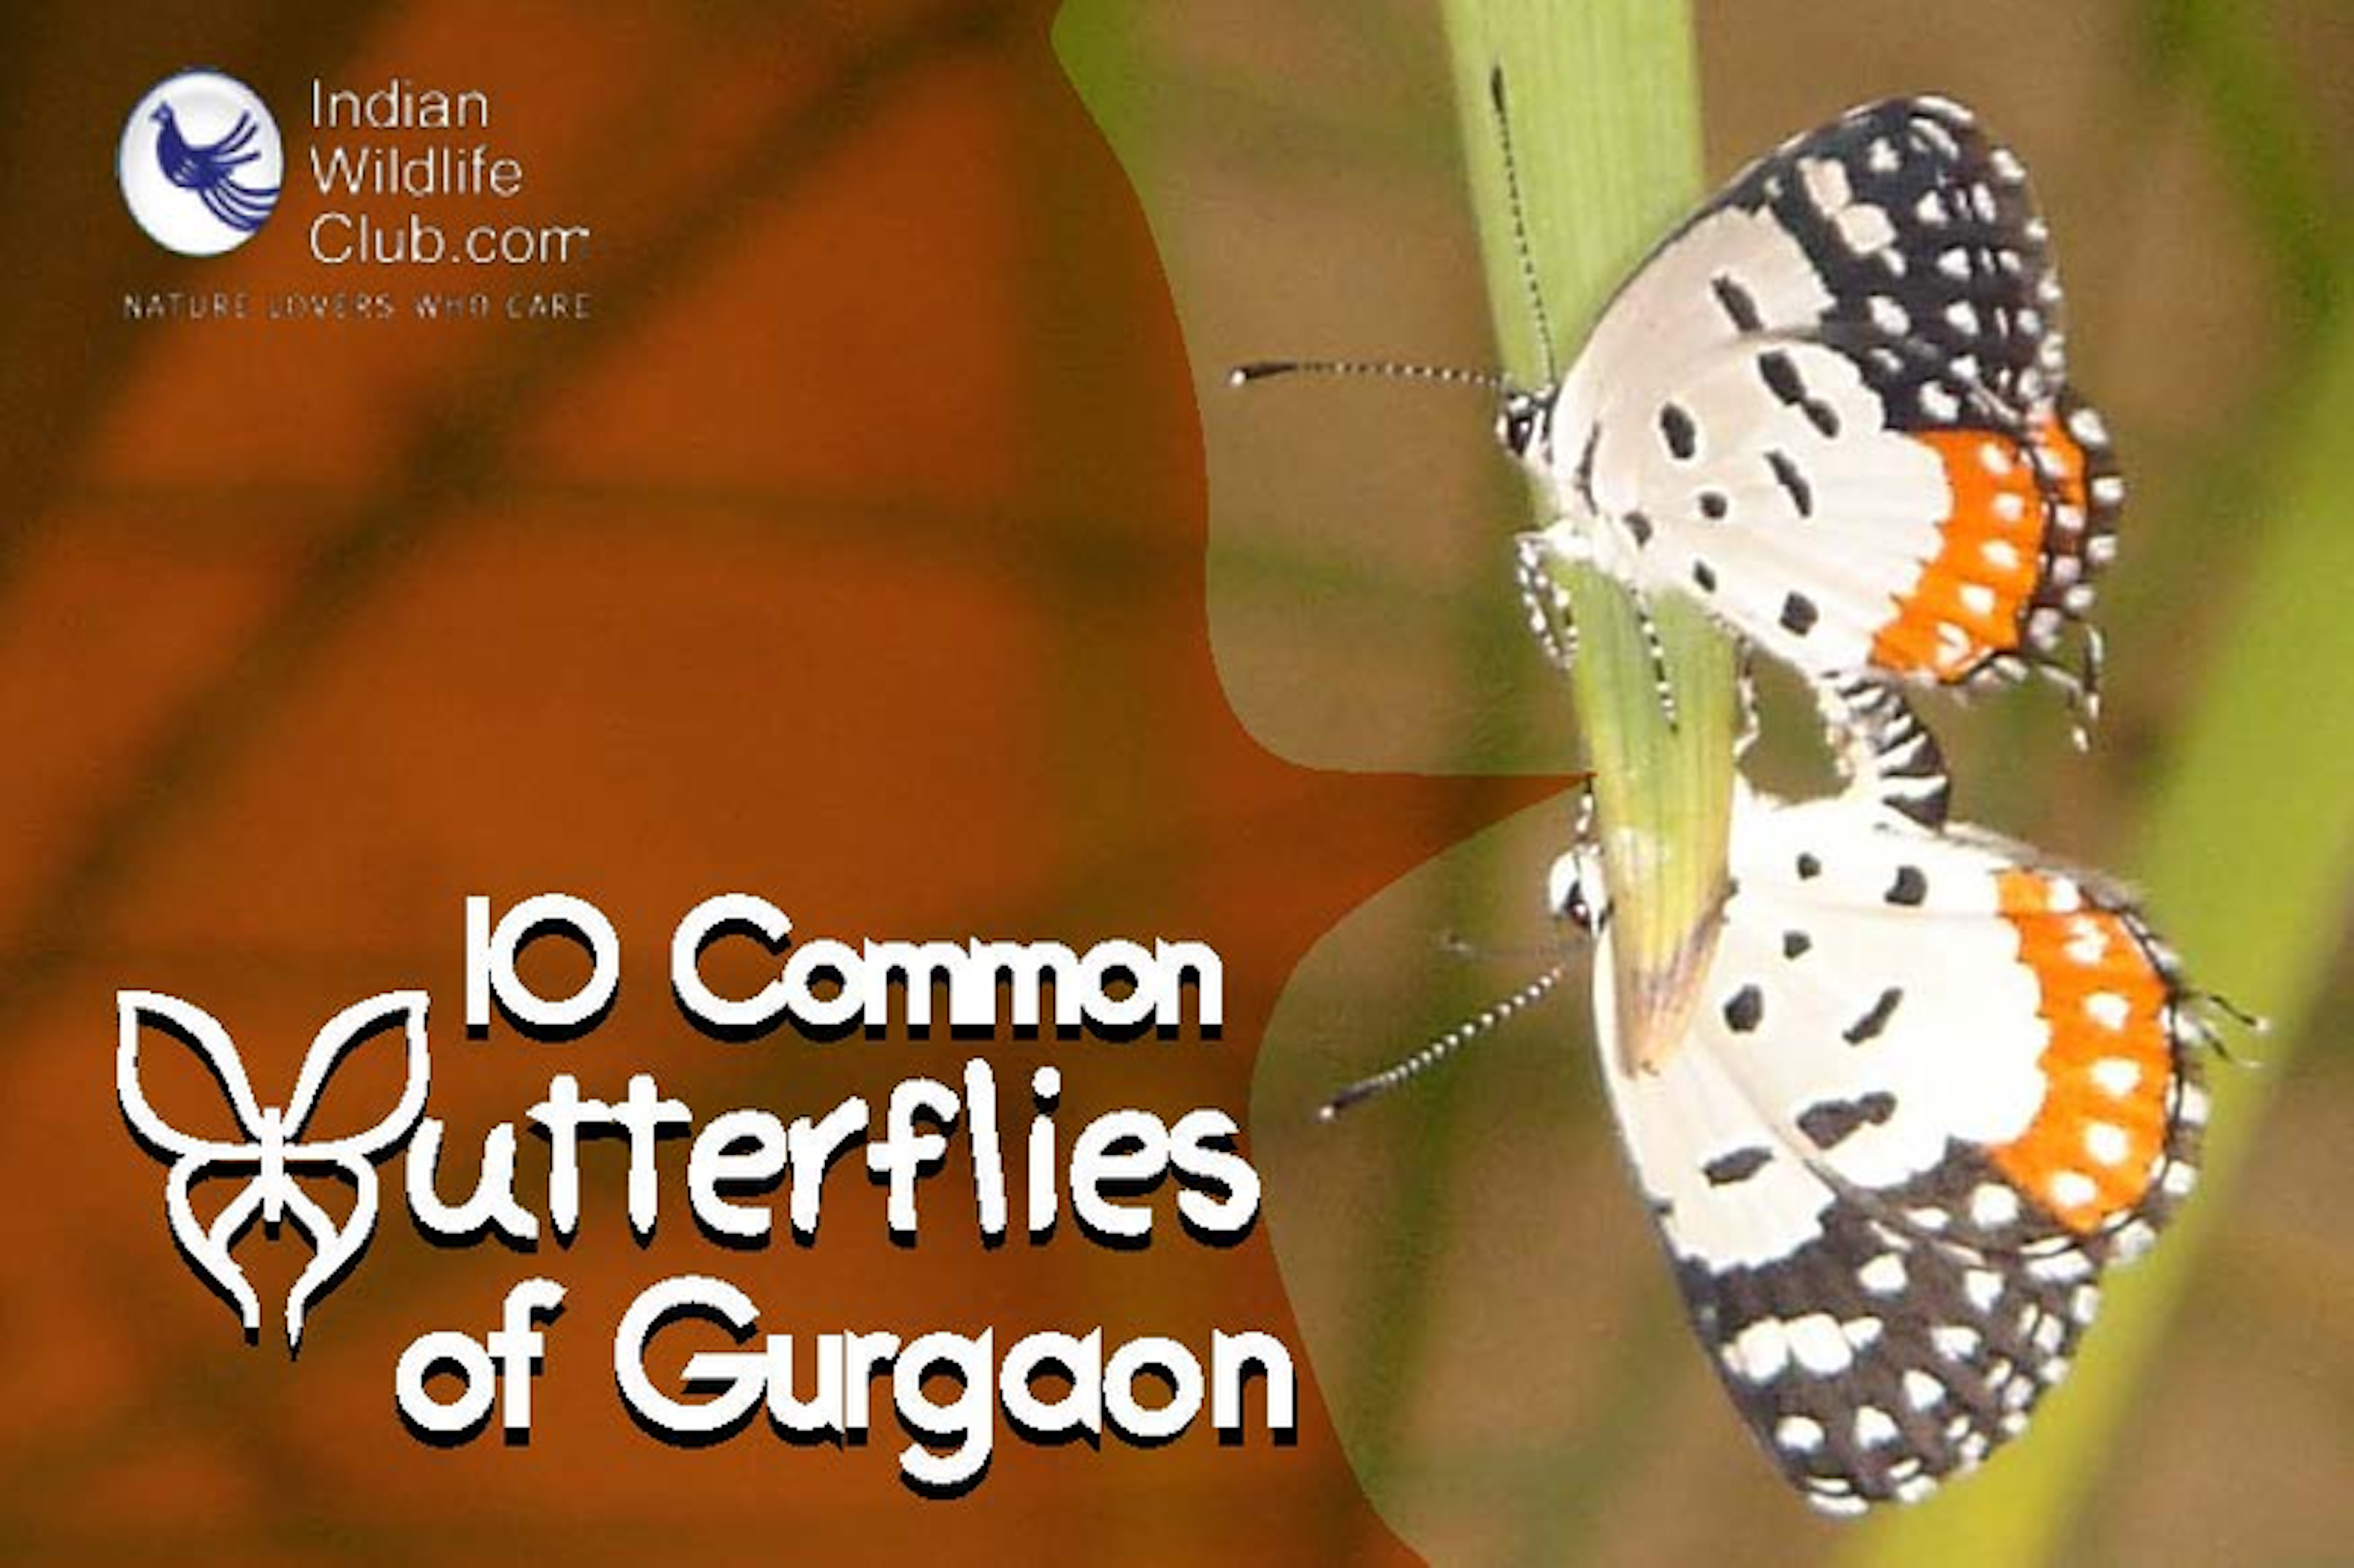 Common butterflies